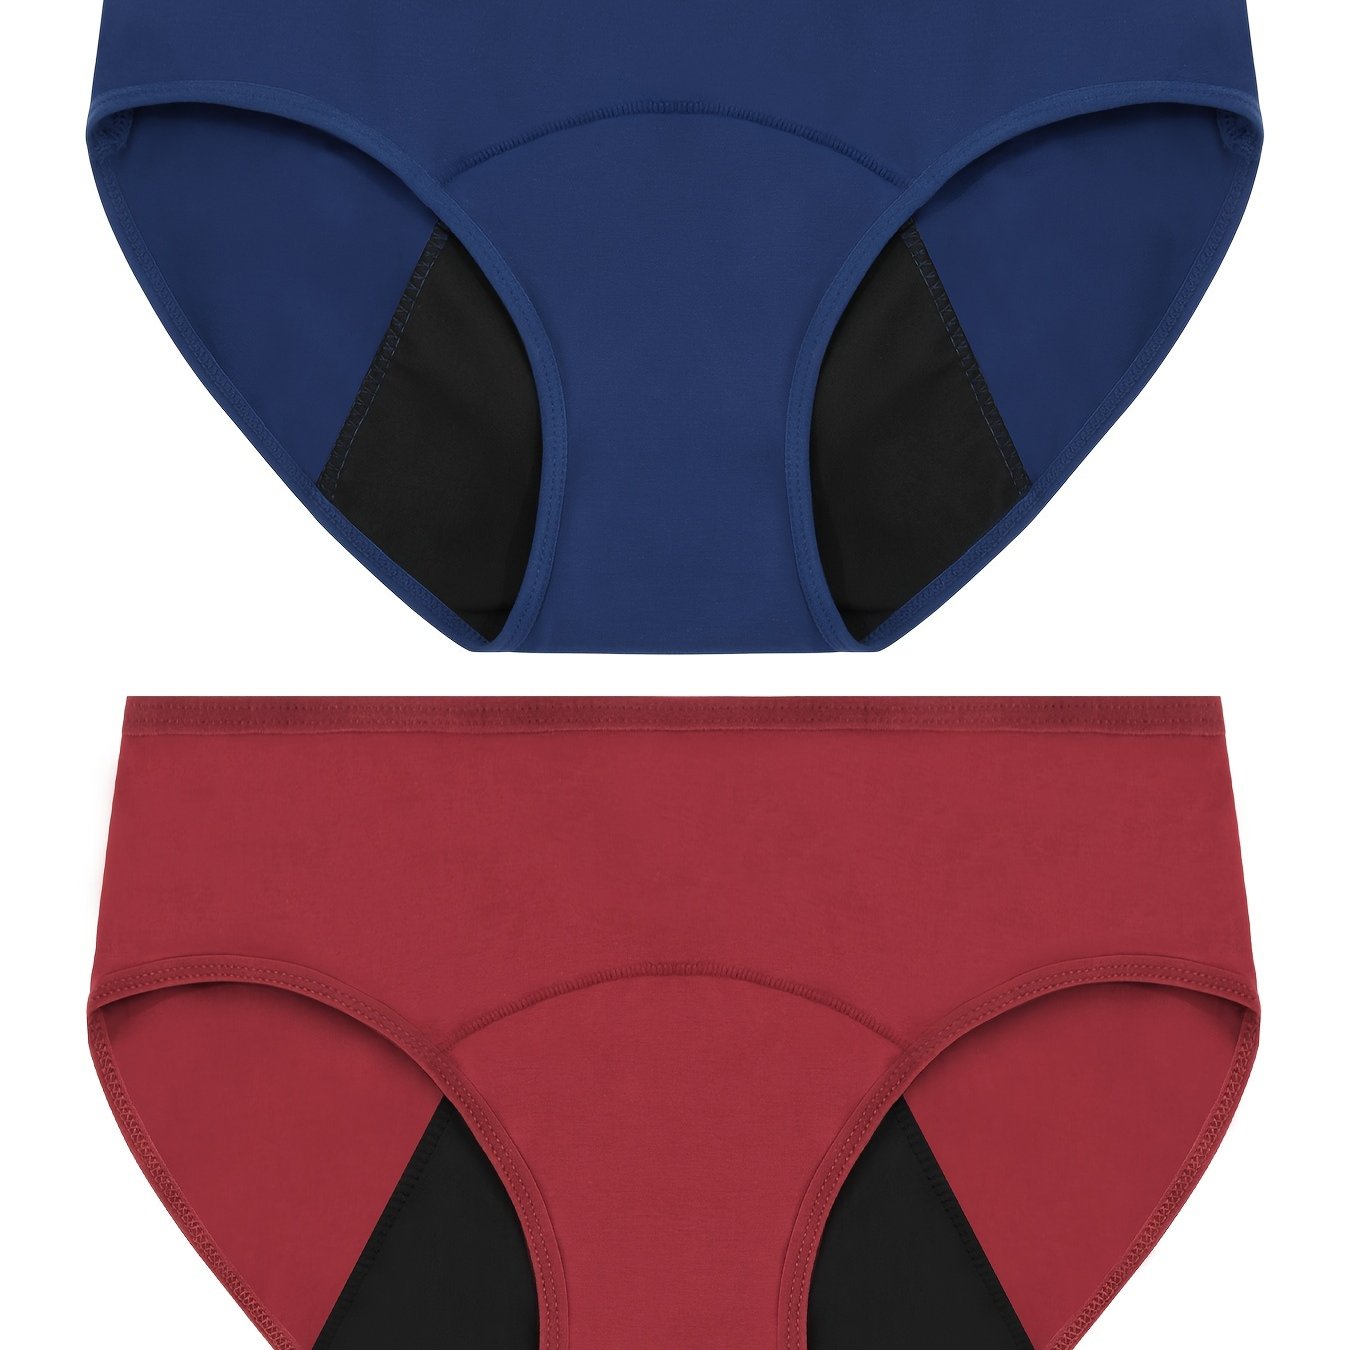 Women's Super Absorbency Cotton Brief Period Underwear, 1 unit